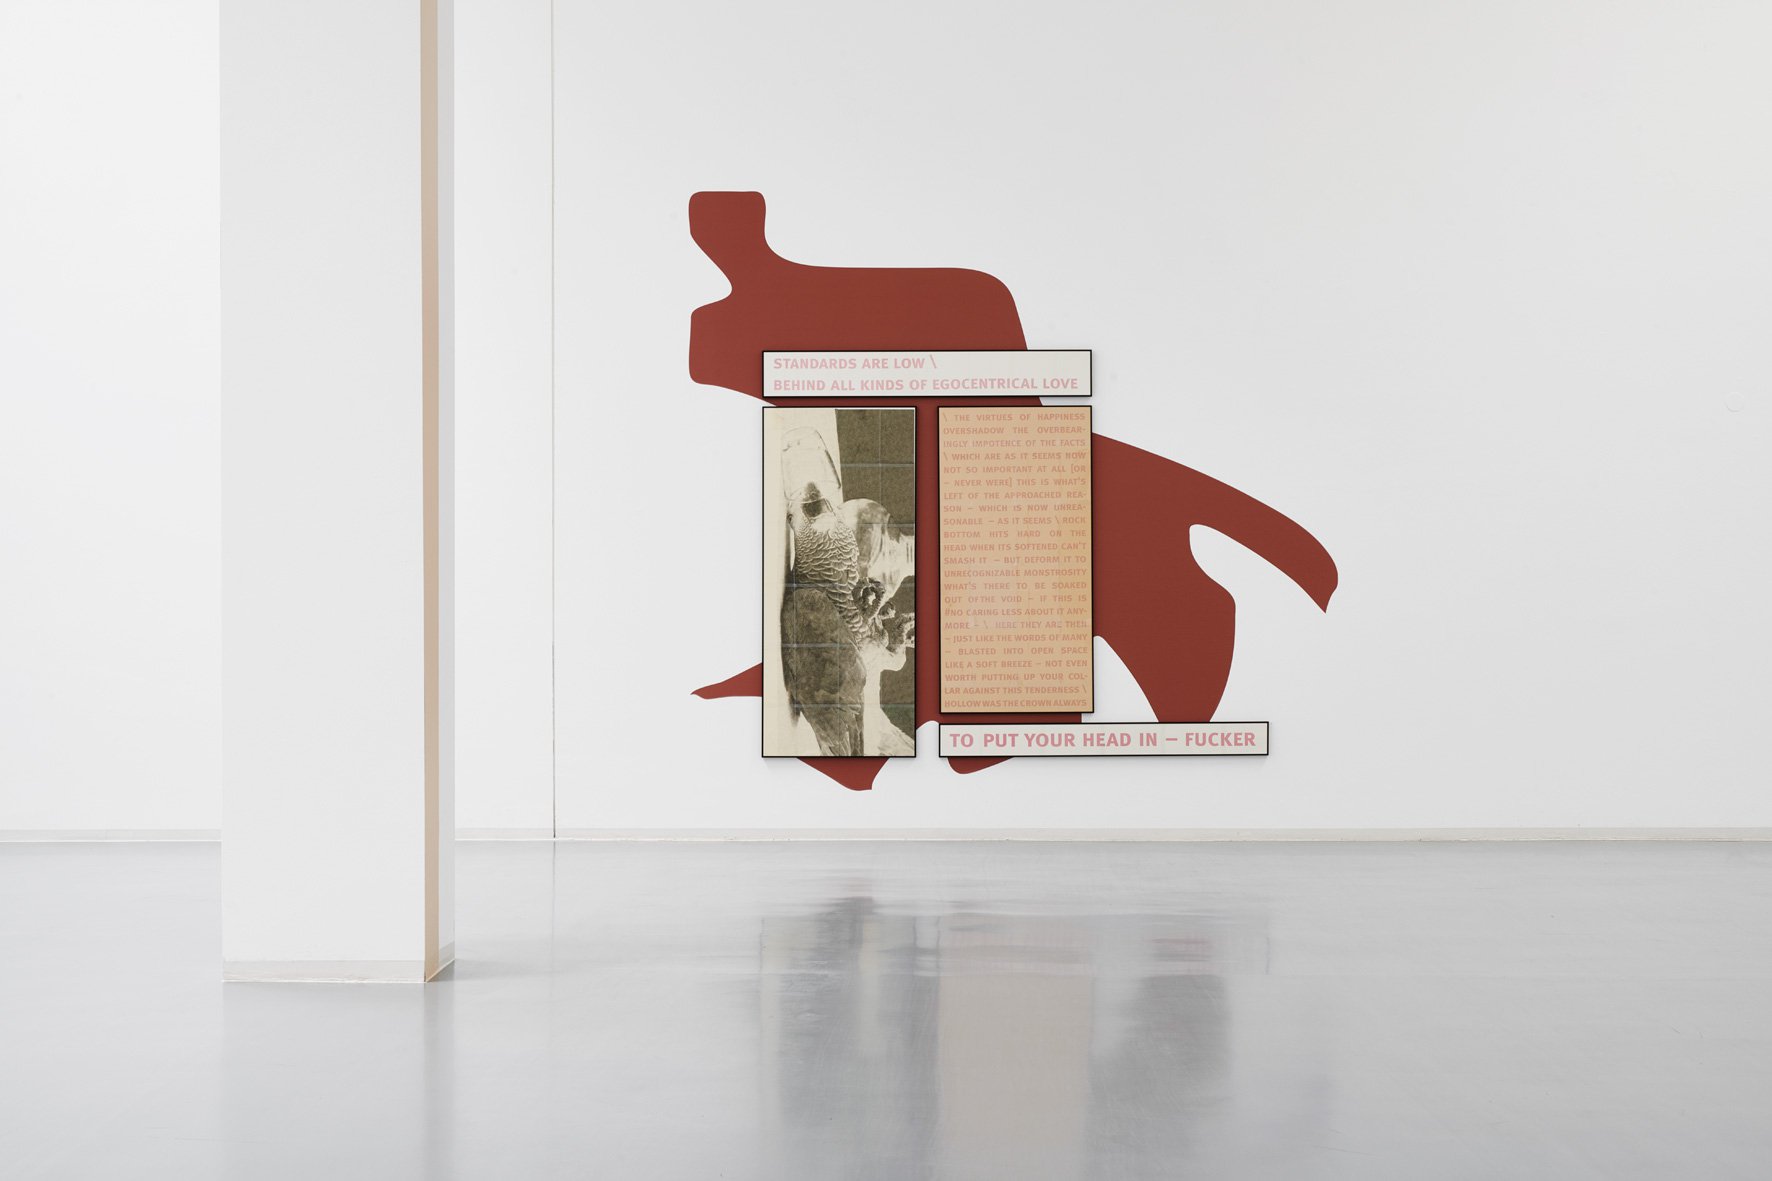 Sarah Kürten, installation view, 2018, Bonner Kunstverein, courtesy the artist and Galerie Max Mayer, Düsseldorf. Photo: Mareike Tocha